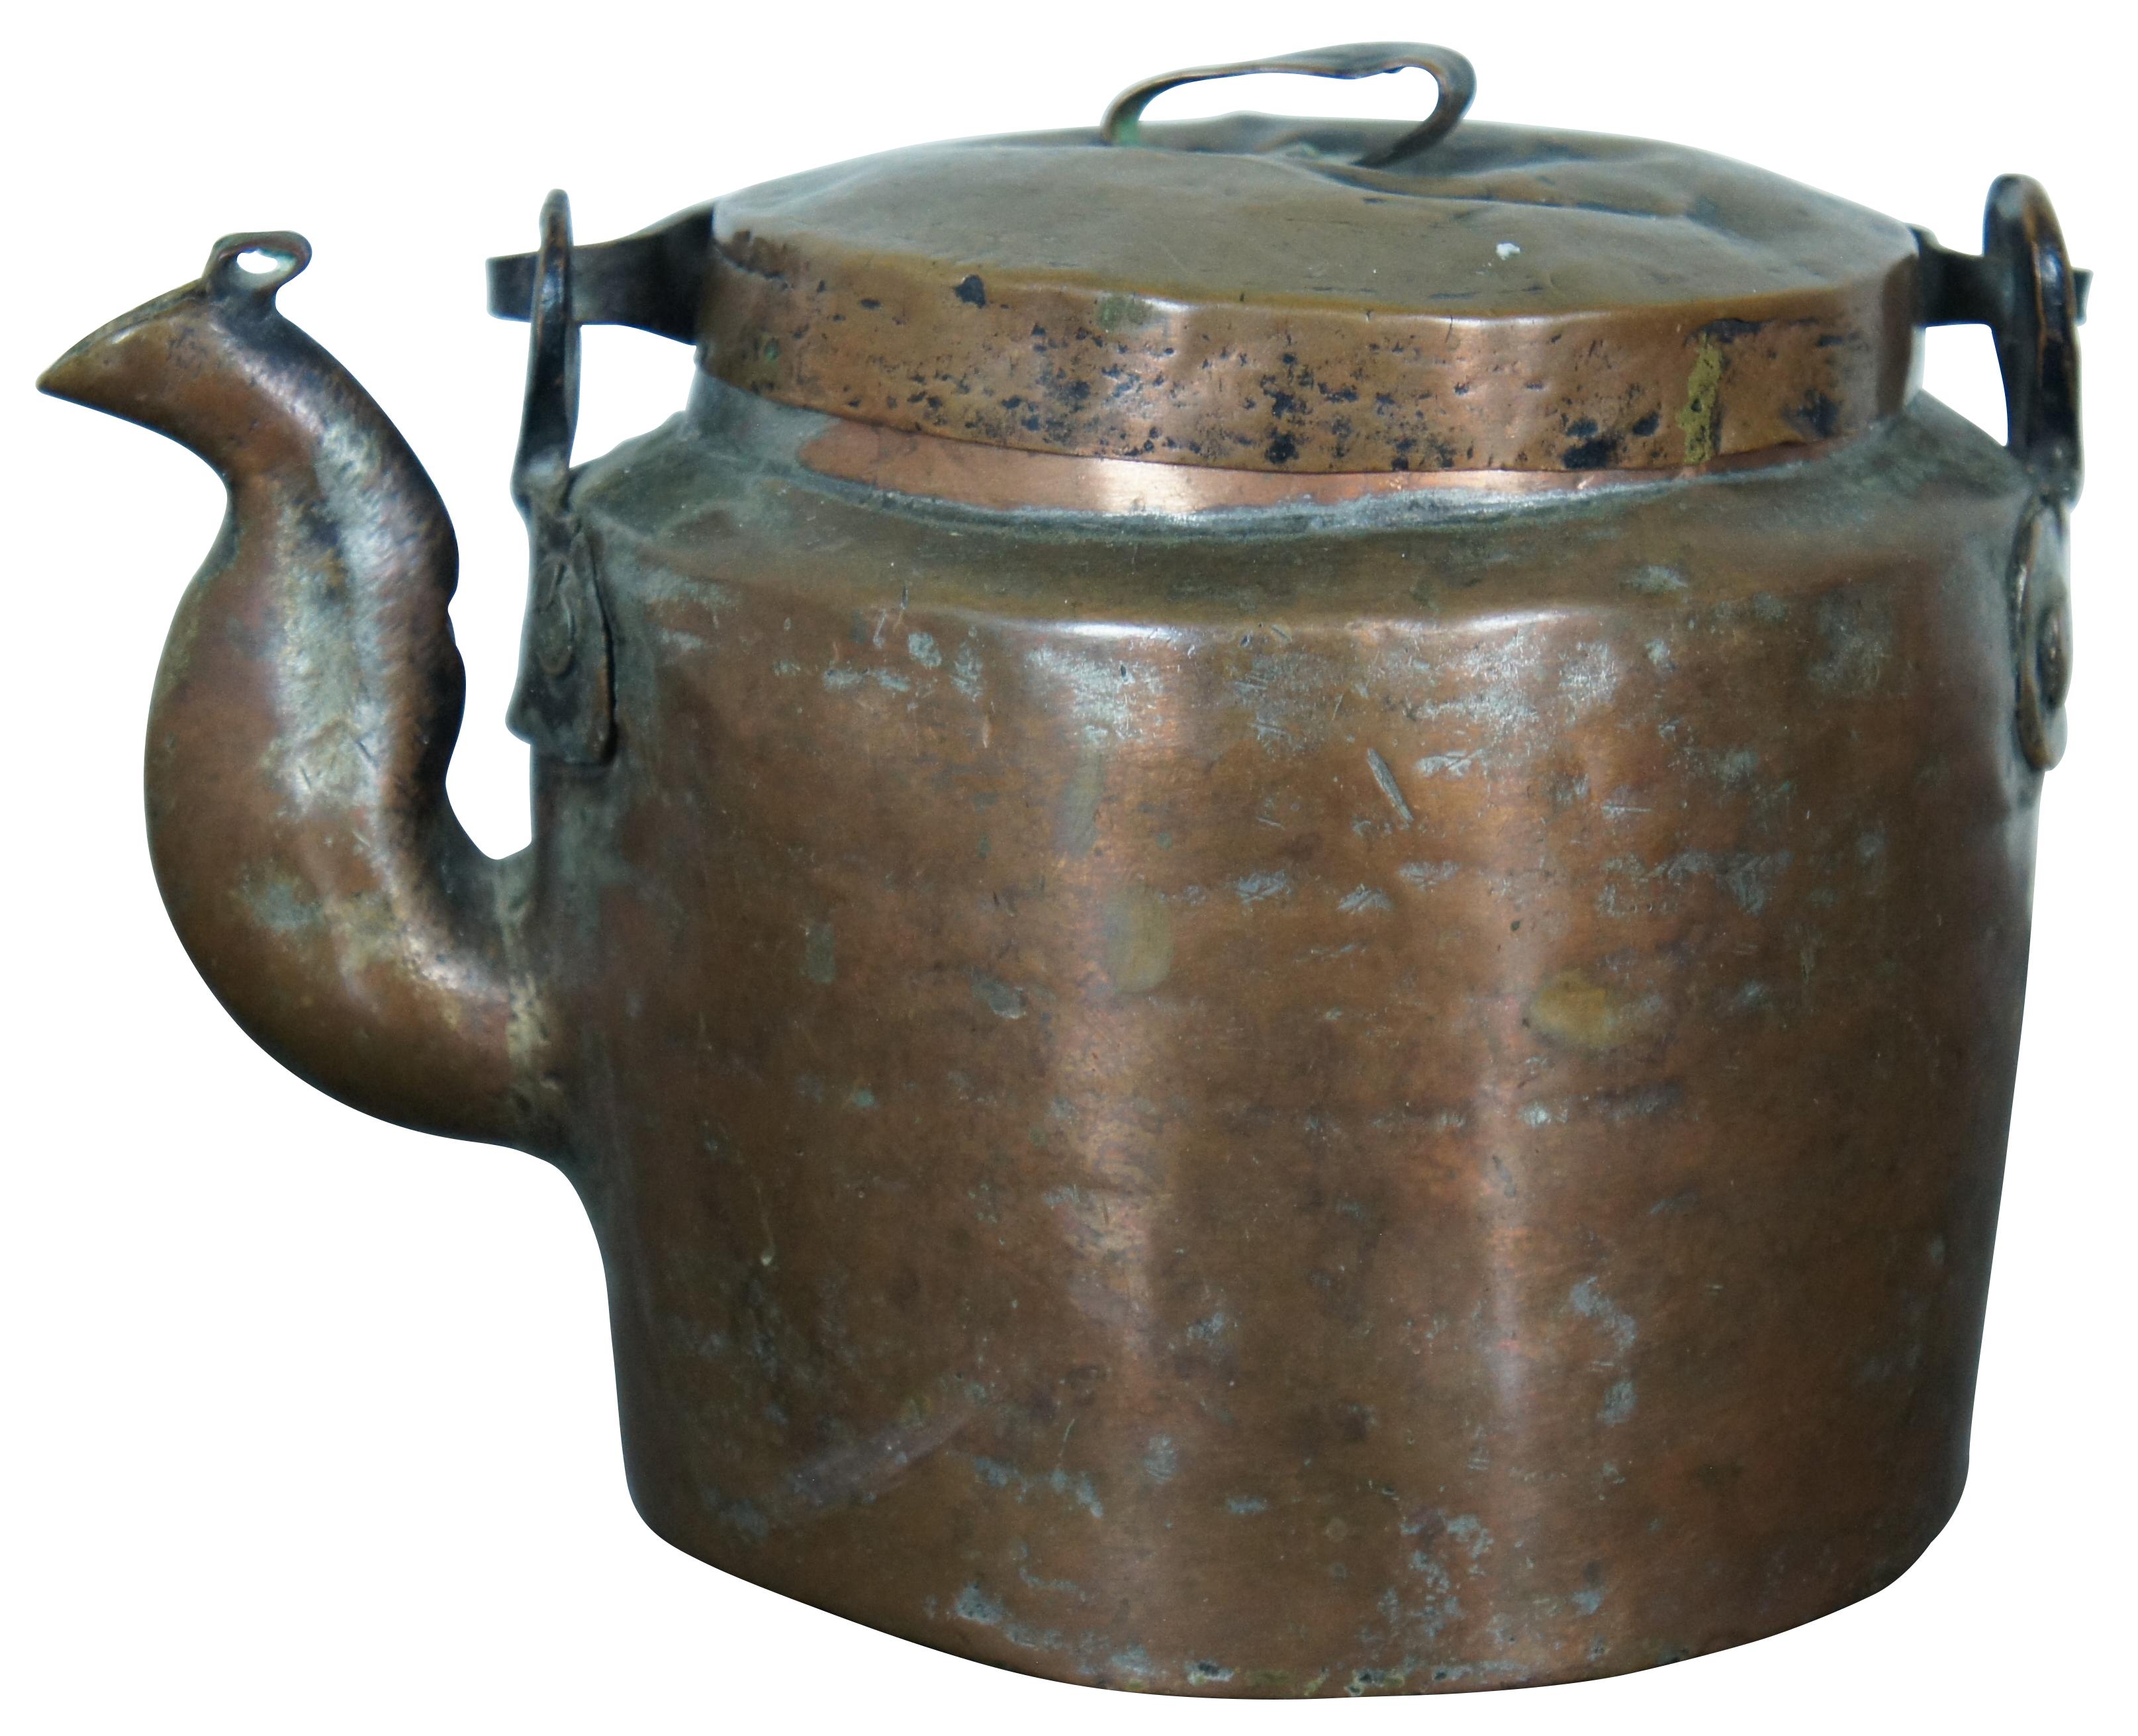 Antiker Teekessel aus Kupfer aus dem 19. Jahrhundert mit einem einfachen geätzten Design auf dem Griff. Maße: 7